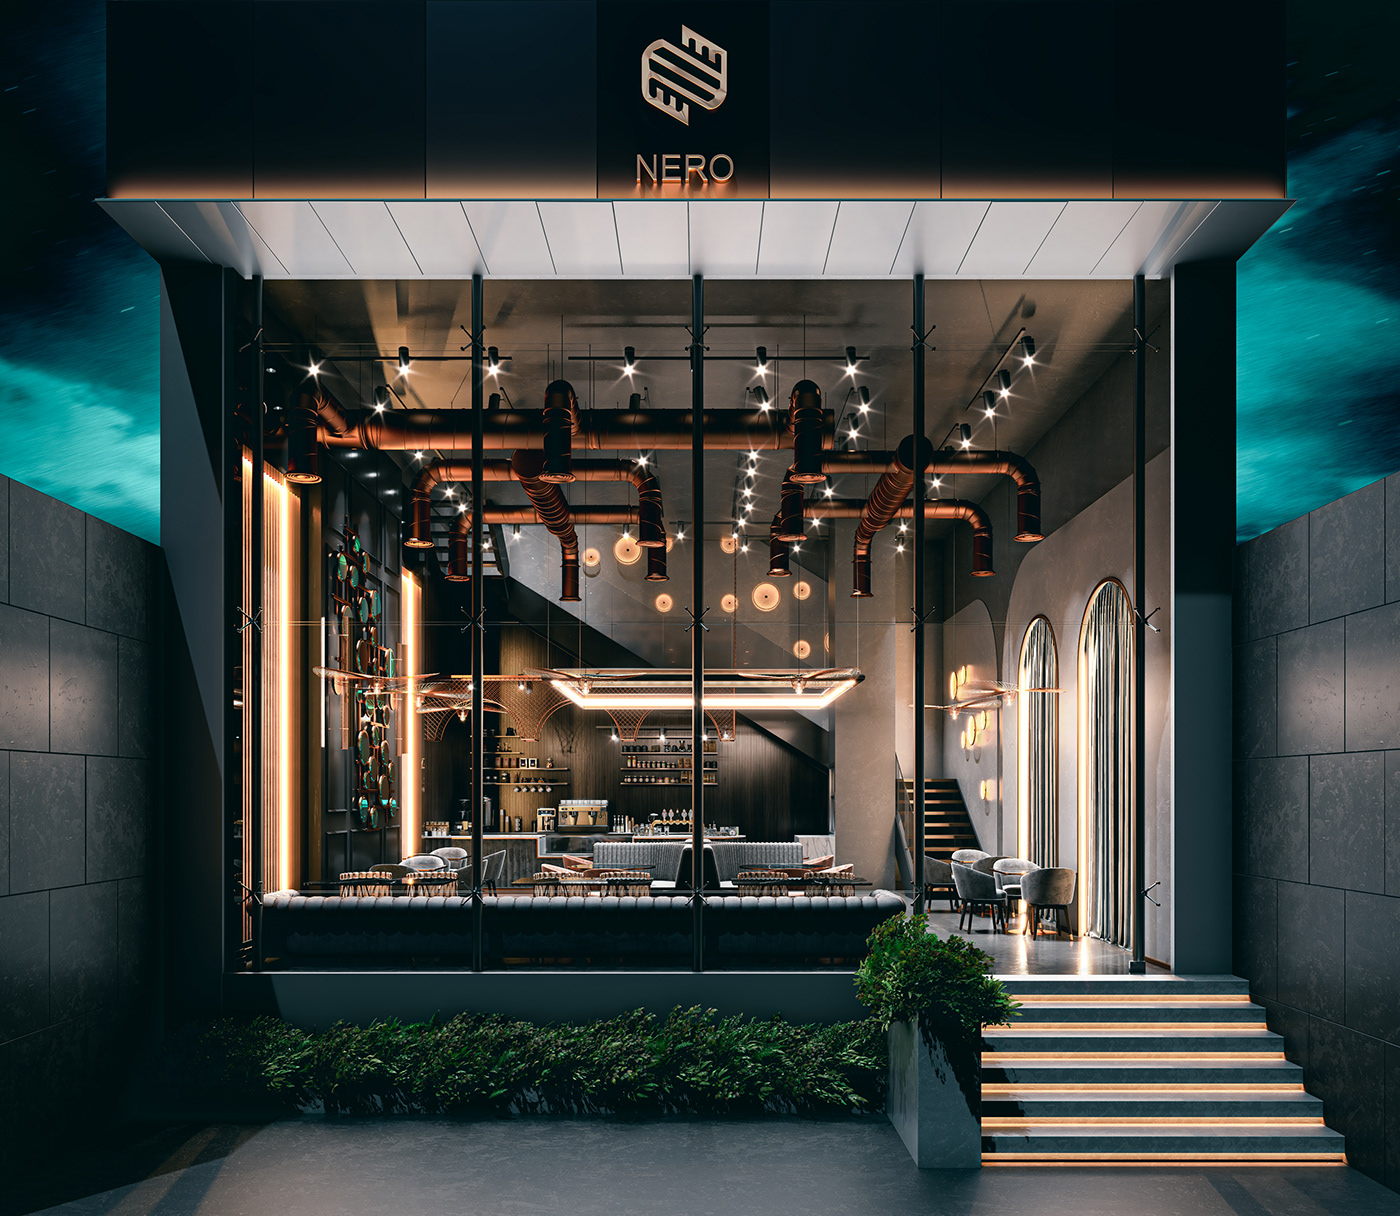 architecture bar cafe design interiordesign lighting modern restaurant visualization interior design 